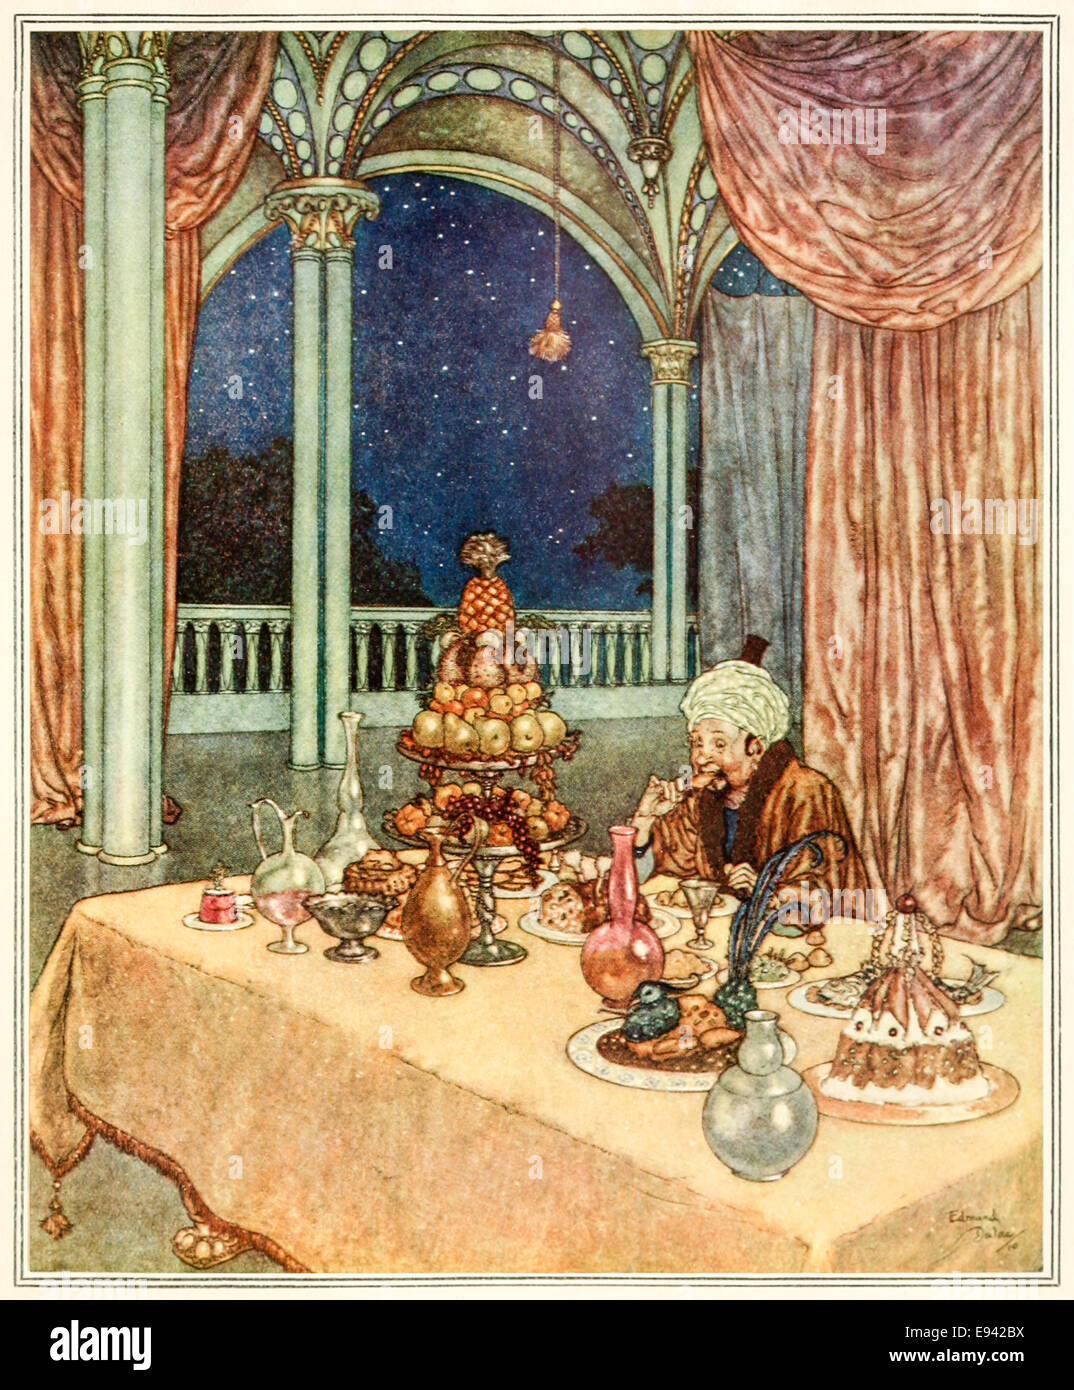 La Bella y la Bestia, Edmund Dulac ilustración de "bella durmiente y otros cuentos de hadas'. Consulte la descripción para obtener más información Foto de stock